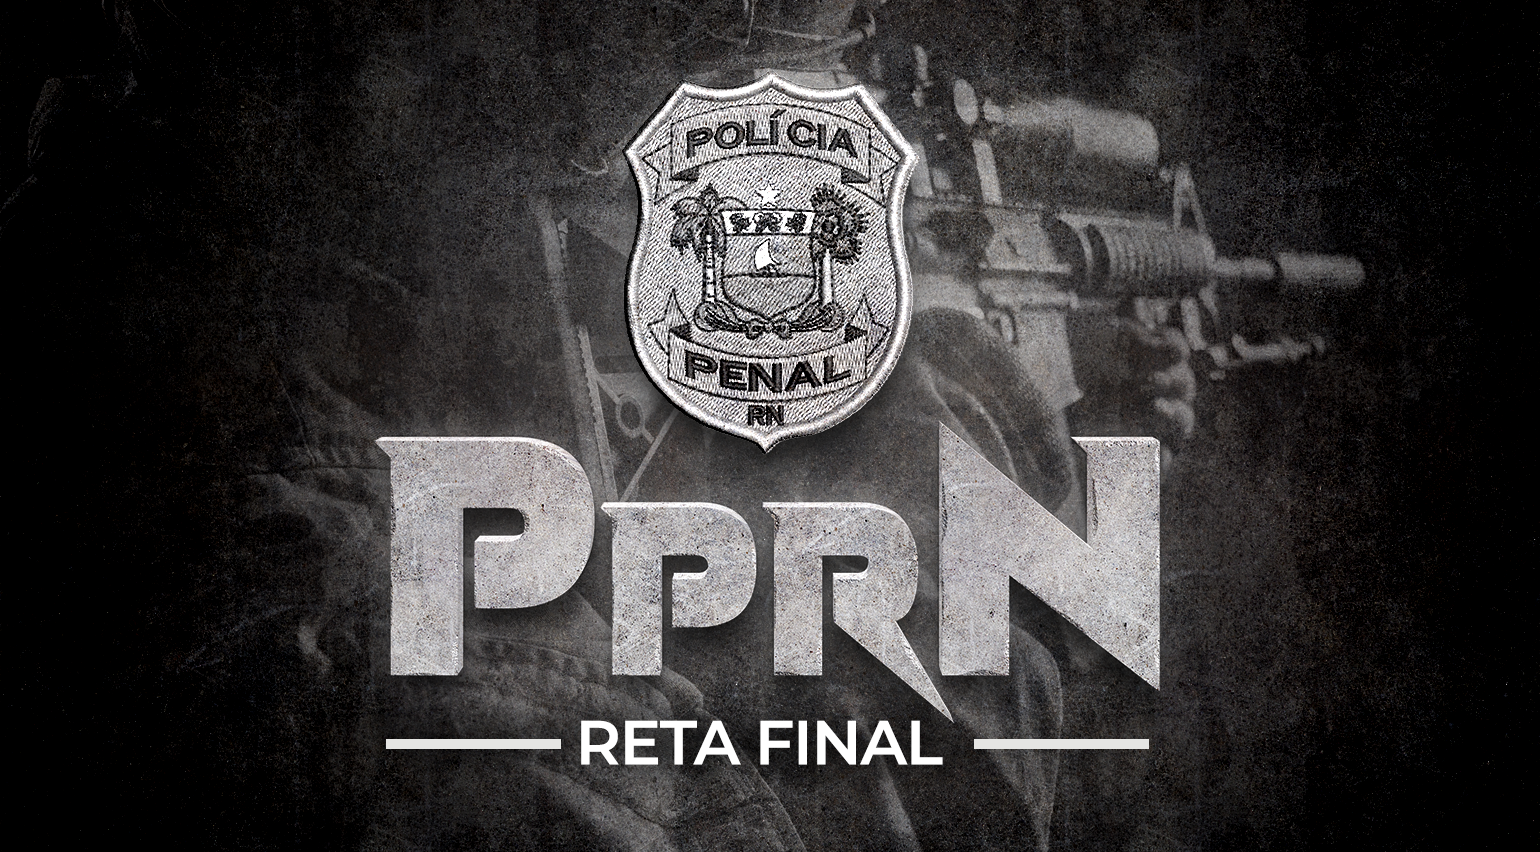 Reta Final - PPRN